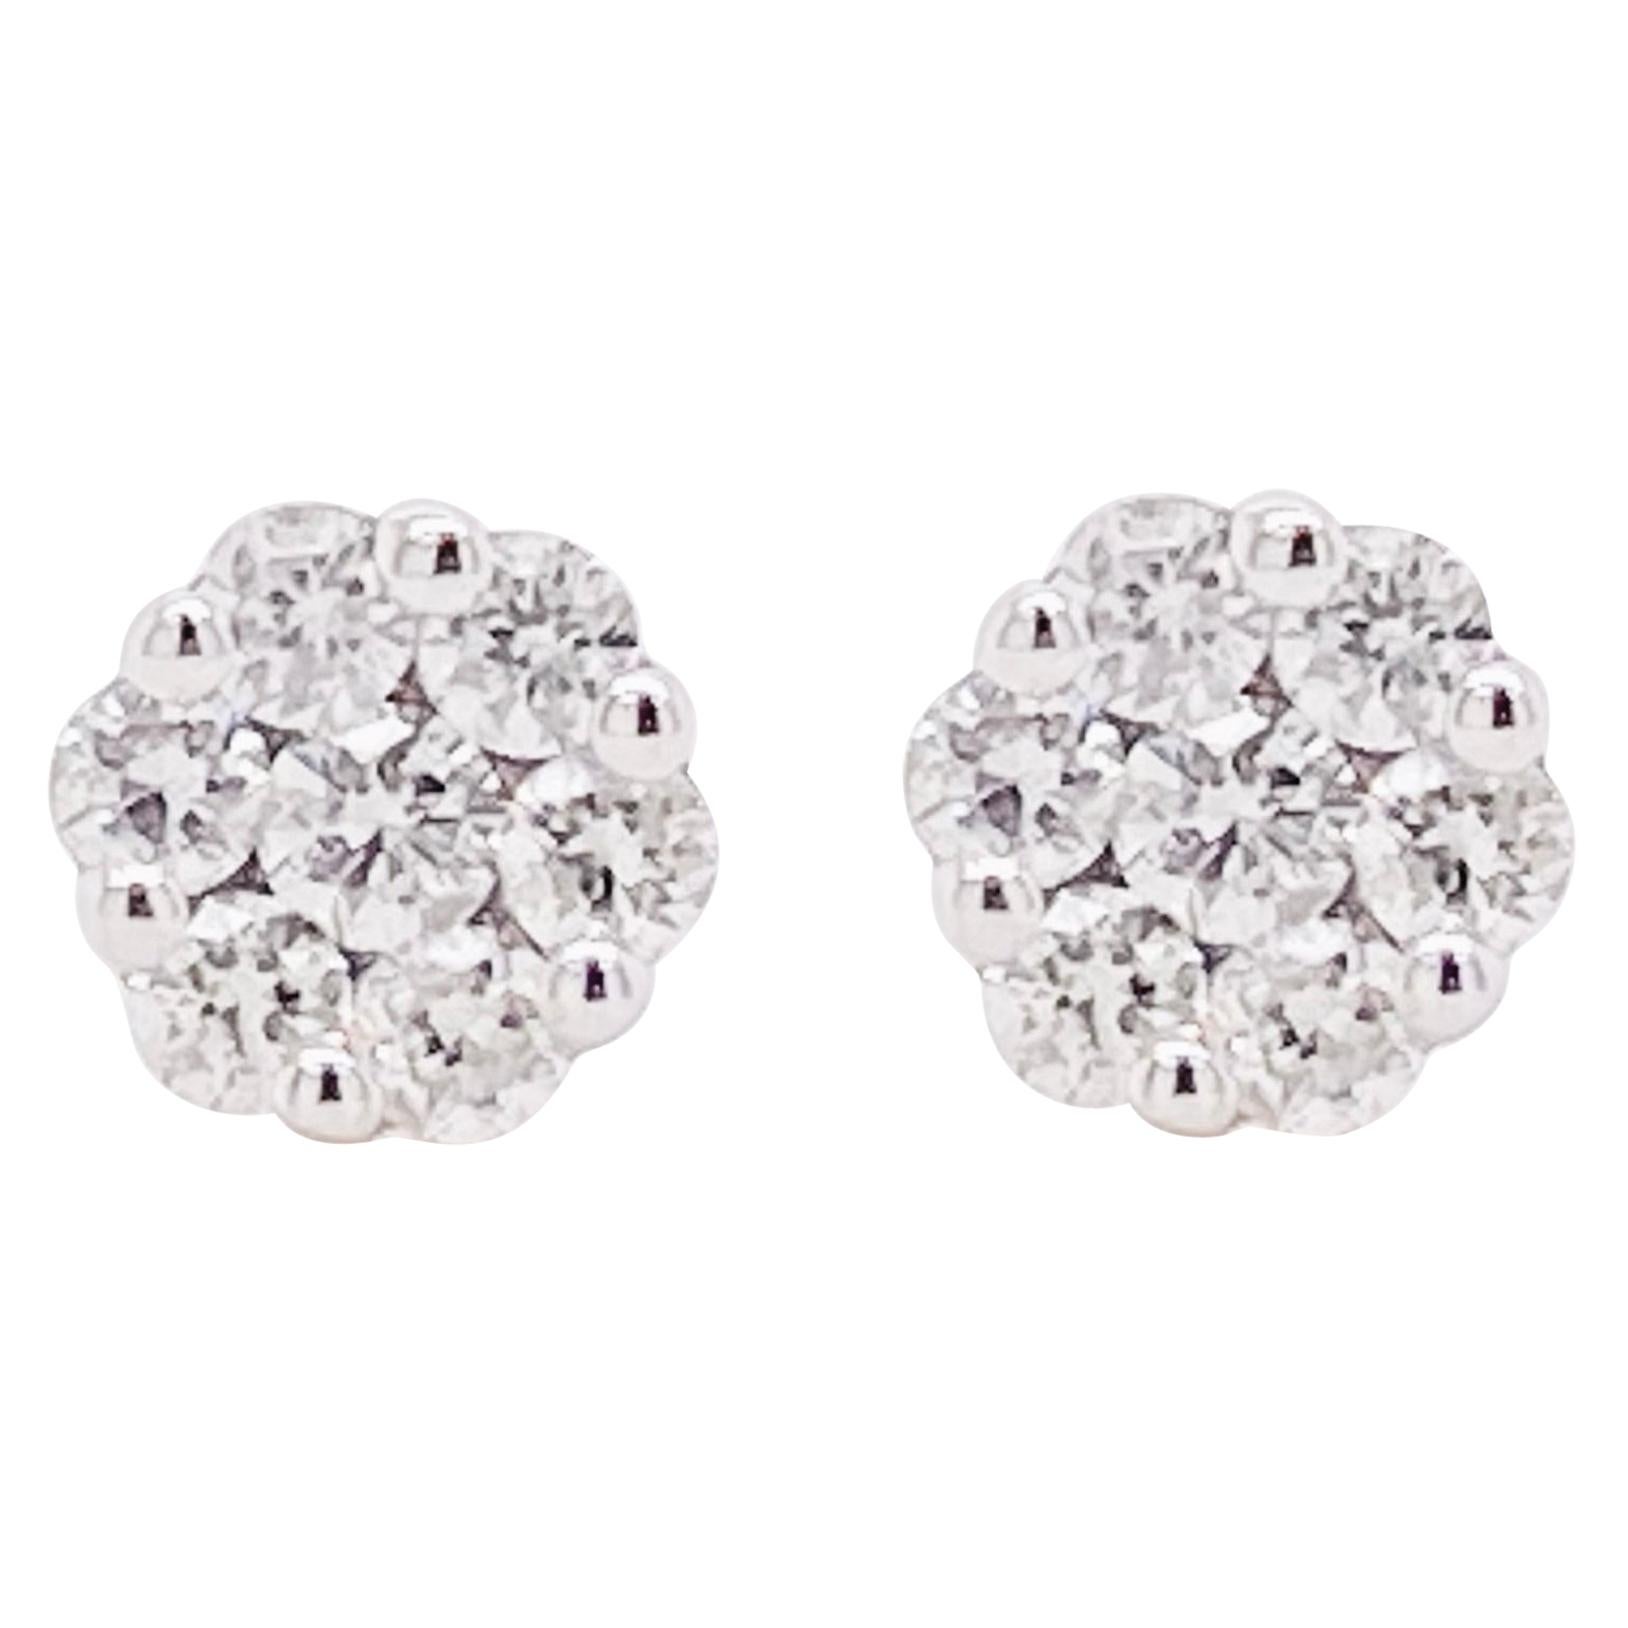 Diamond Cluster Earrings, White Gold Diamond Stud Earrings, Dainty Earrings For Sale